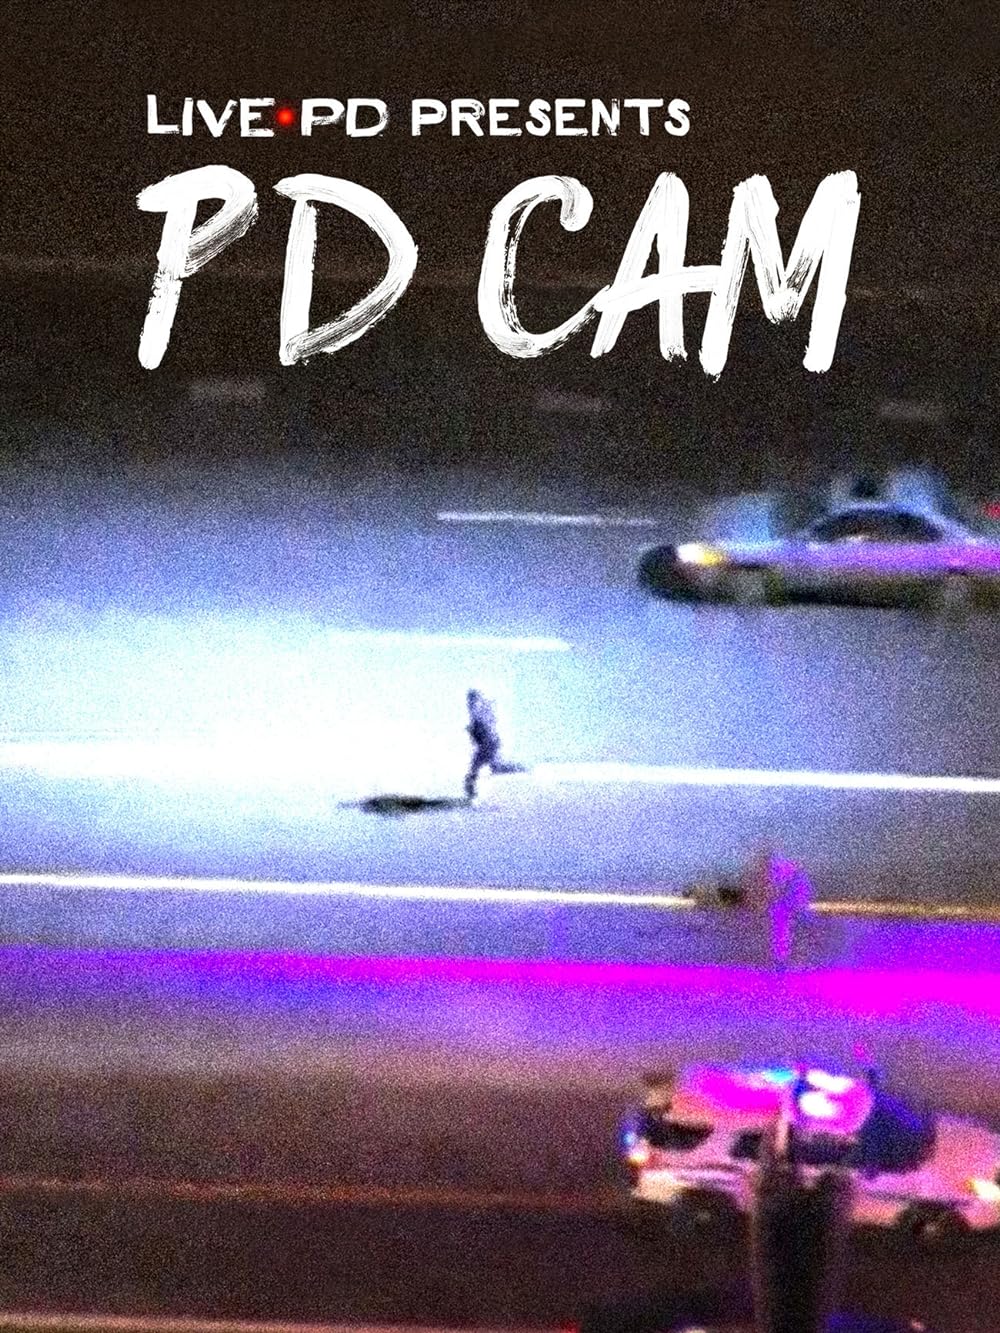 Live PD Presents PD Cam